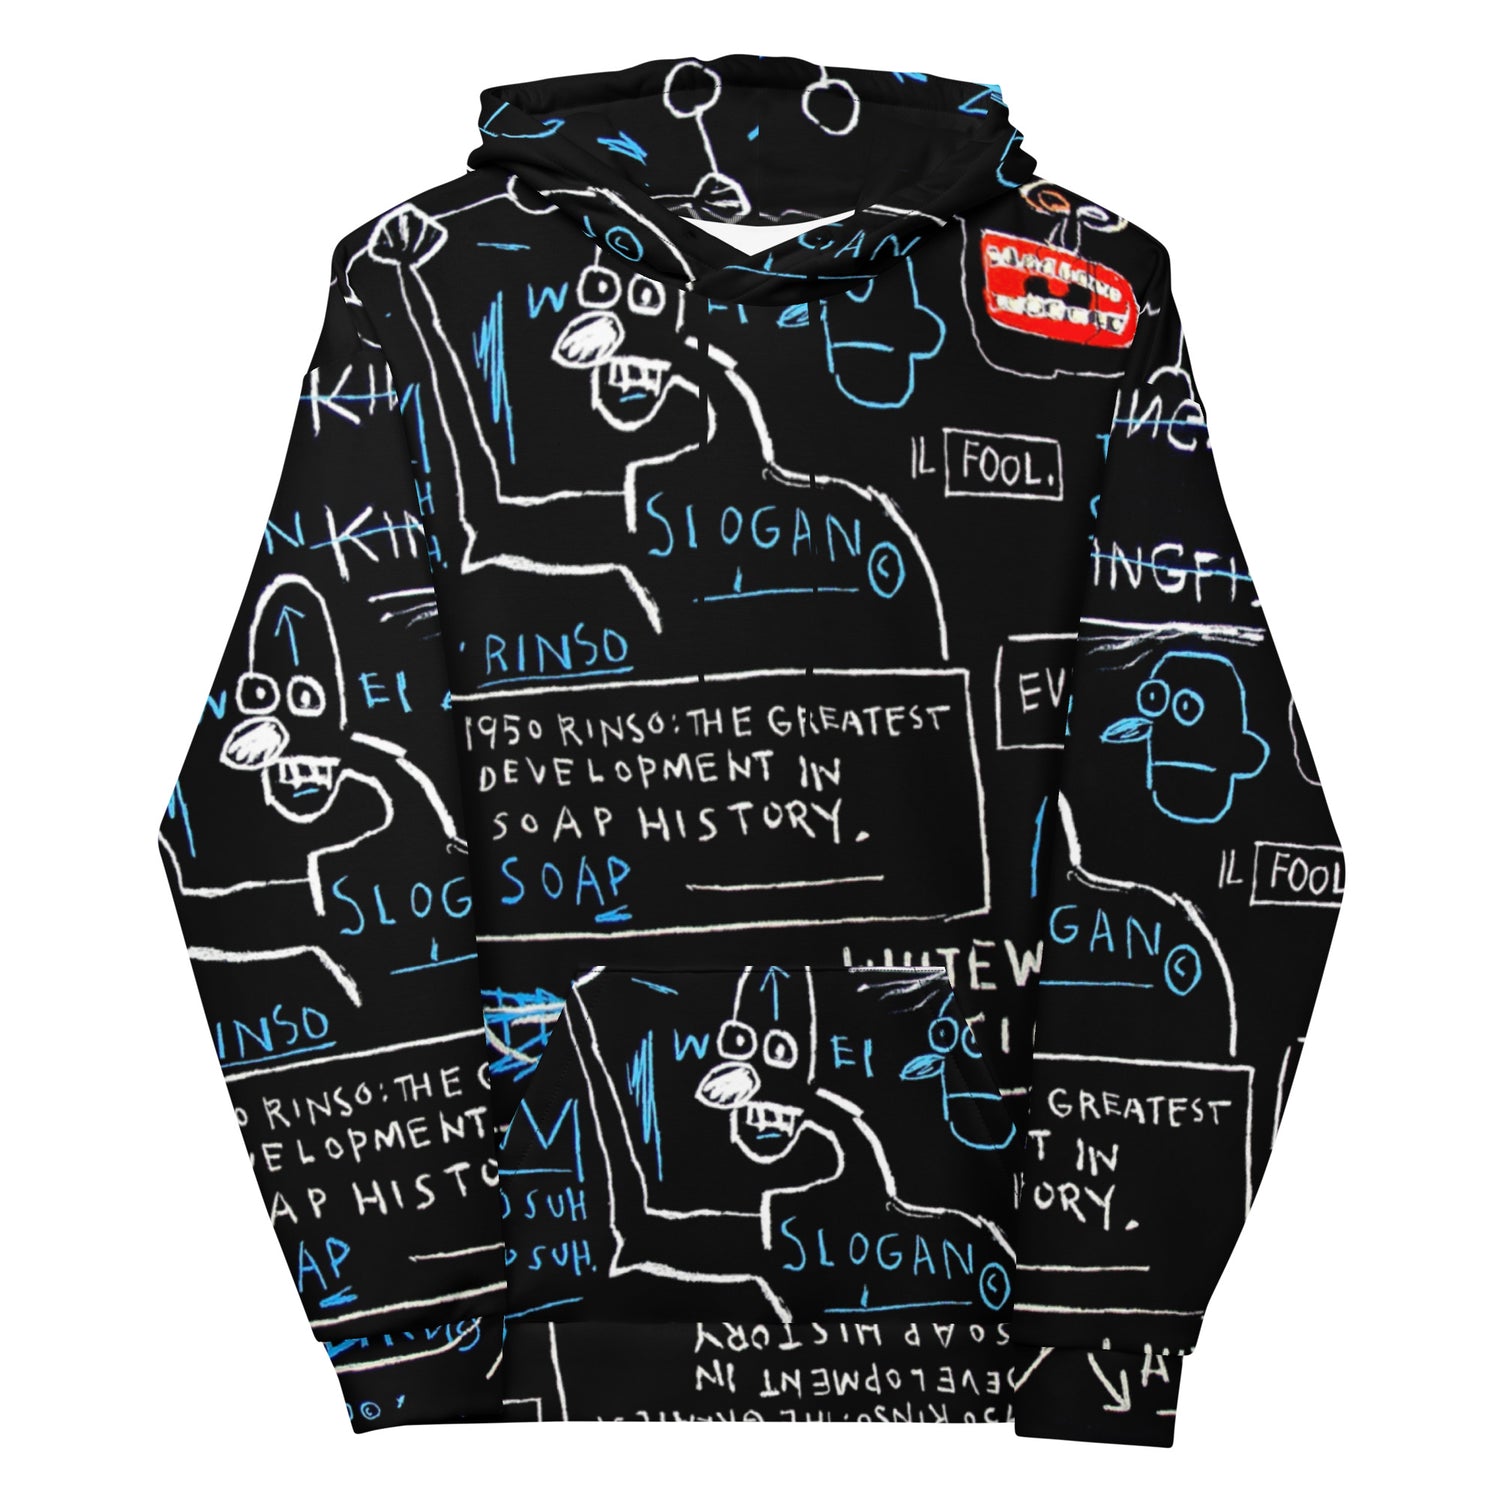 Jean-Michel Basquiat "Rinso" Artwork Printed Premium Streetwear Sweatshirt Hoodie Black Graffiti Harajuku